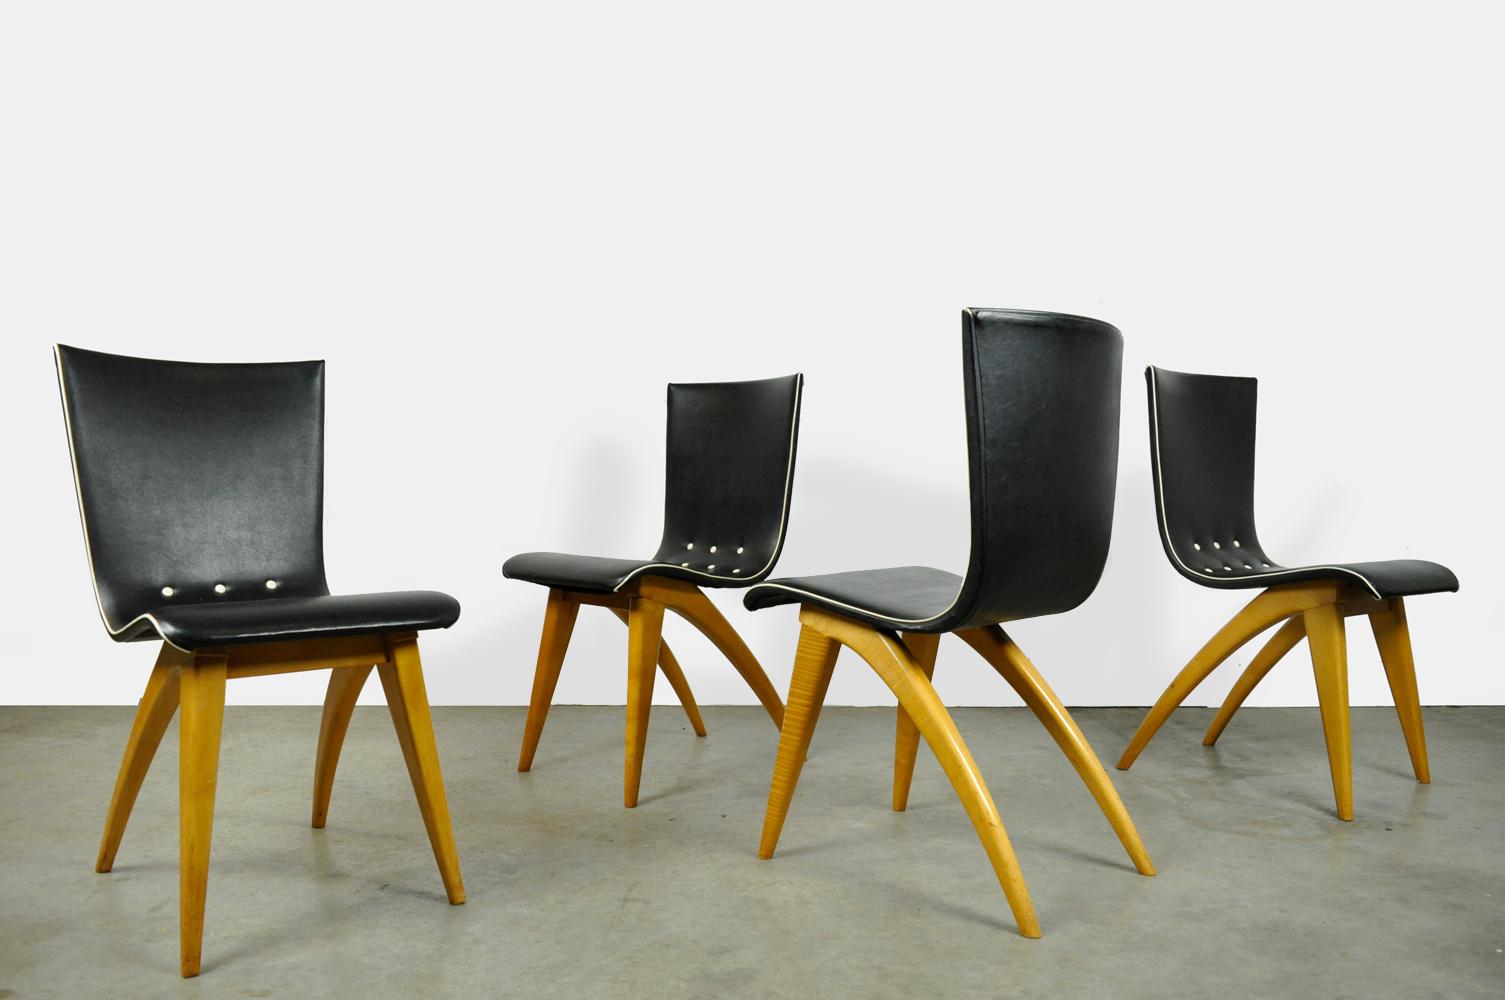 Satz von 4 Stühlen für den Esstisch, entworfen von G.J. van Os und hergestellt von van Os Culemborg, 1950er Jahre. Die Stühle haben klare Holzbeine, wobei die eleganten Hinterbeine zusammen mit der leicht flexiblen Rückenlehne das Design des Stuhls